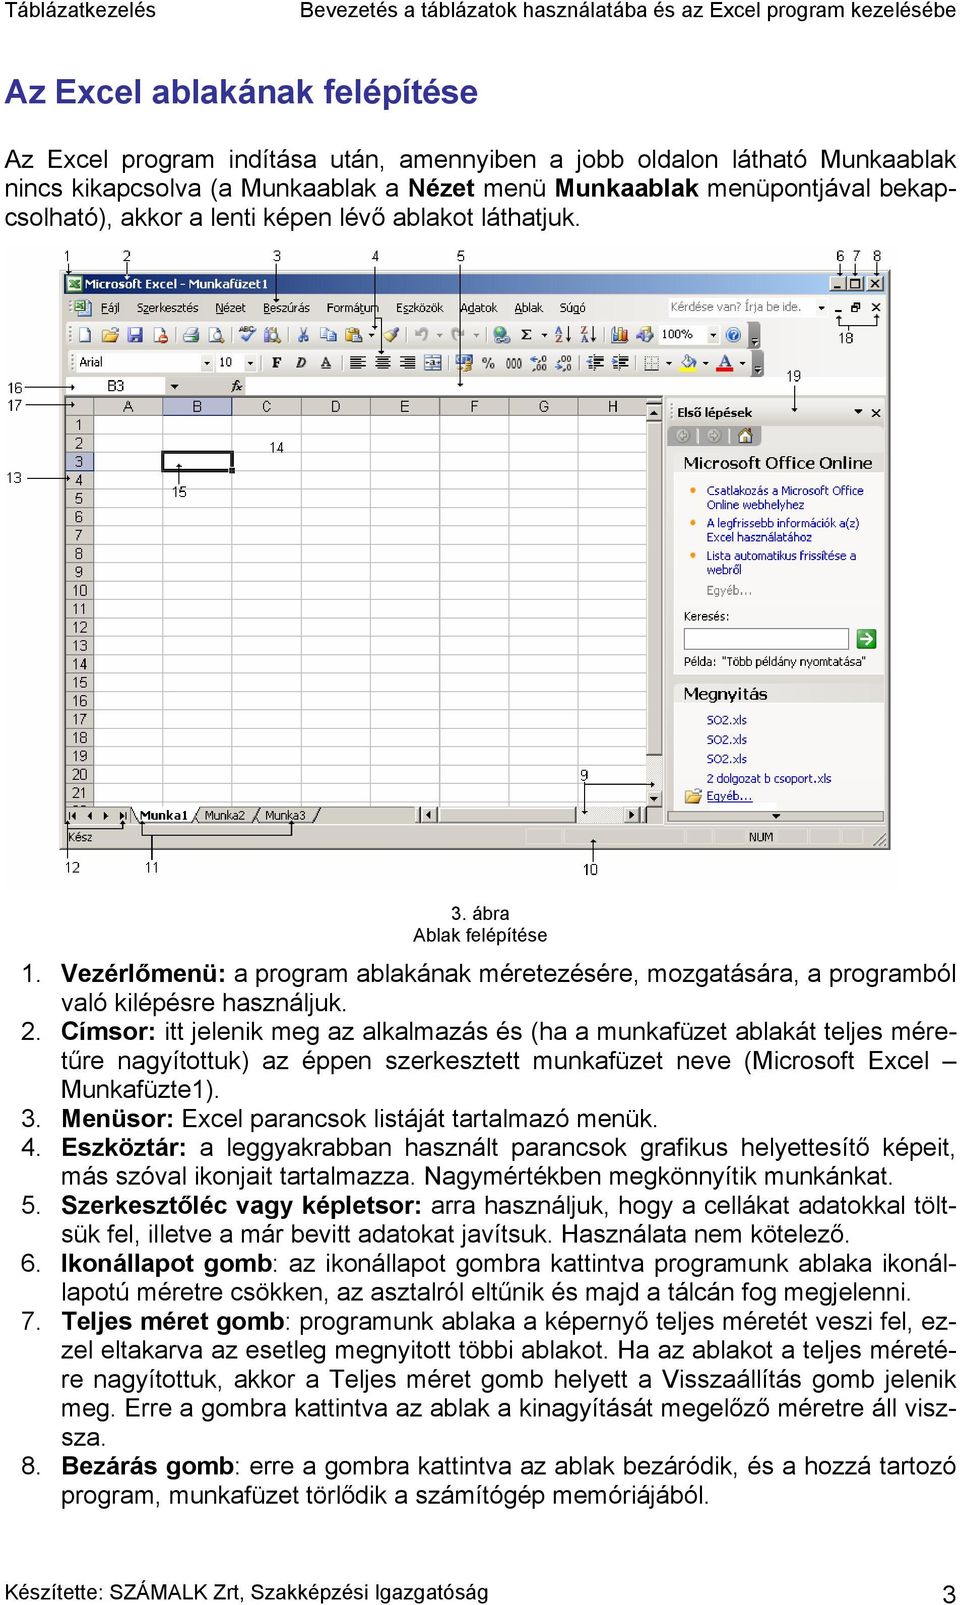 Címsor: itt jelenik meg az alkalmazás és (ha a munkafüzet ablakát teljes méretűre nagyítottuk) az éppen szerkesztett munkafüzet neve (Microsoft Excel Munkafüzte1). 3.